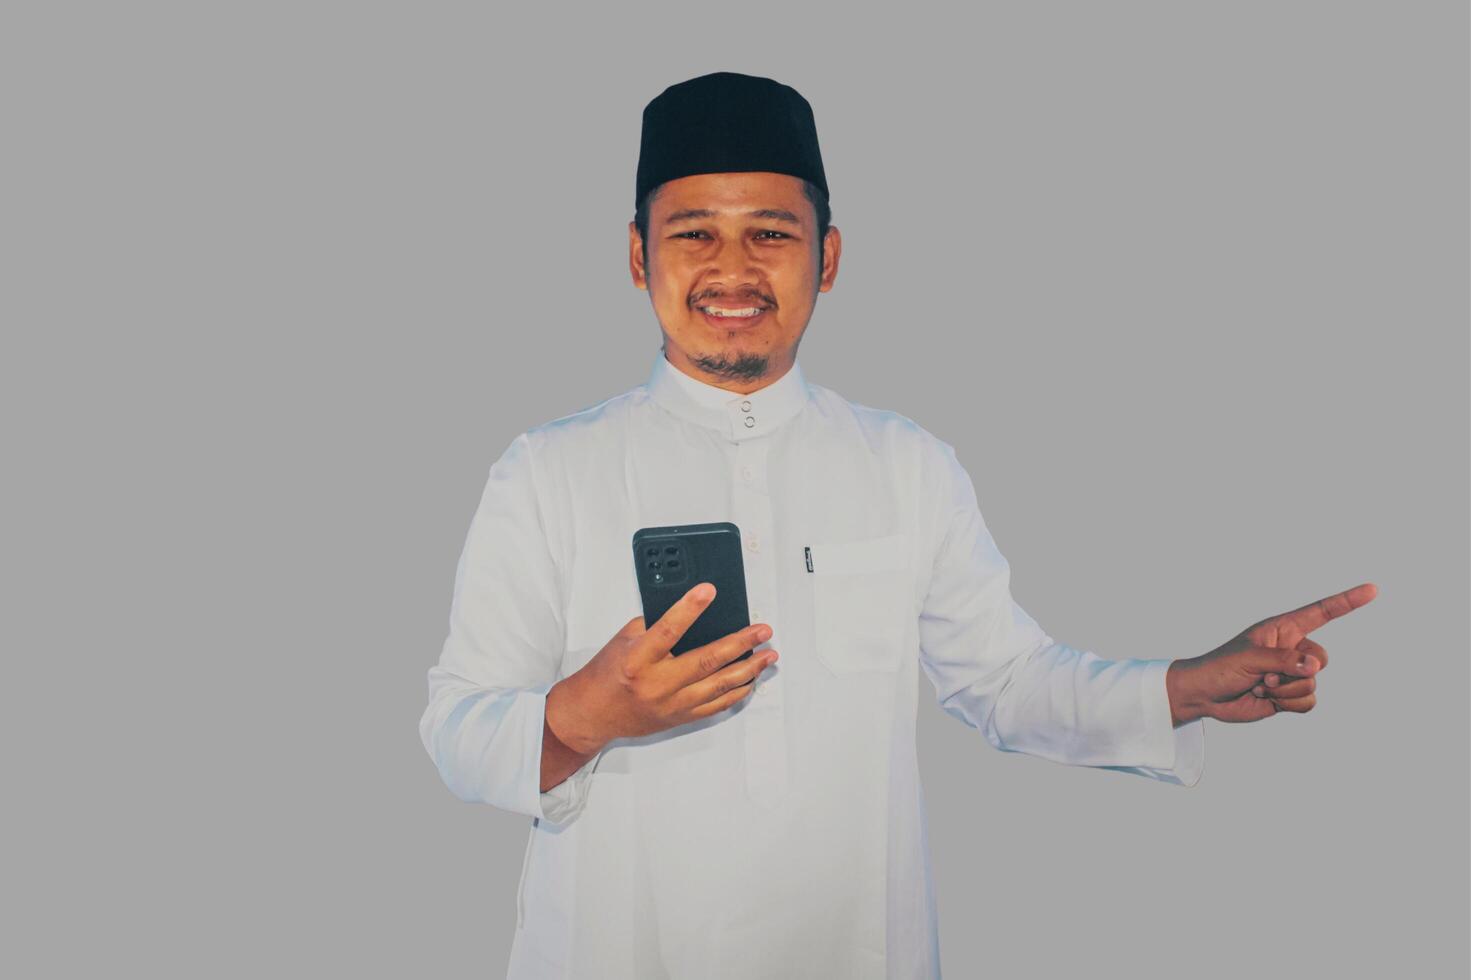 Moslem asiatisch Mann lächelnd glücklich während halten Handy, Mobiltelefon Telefon und zeigen zu das richtig Seite foto